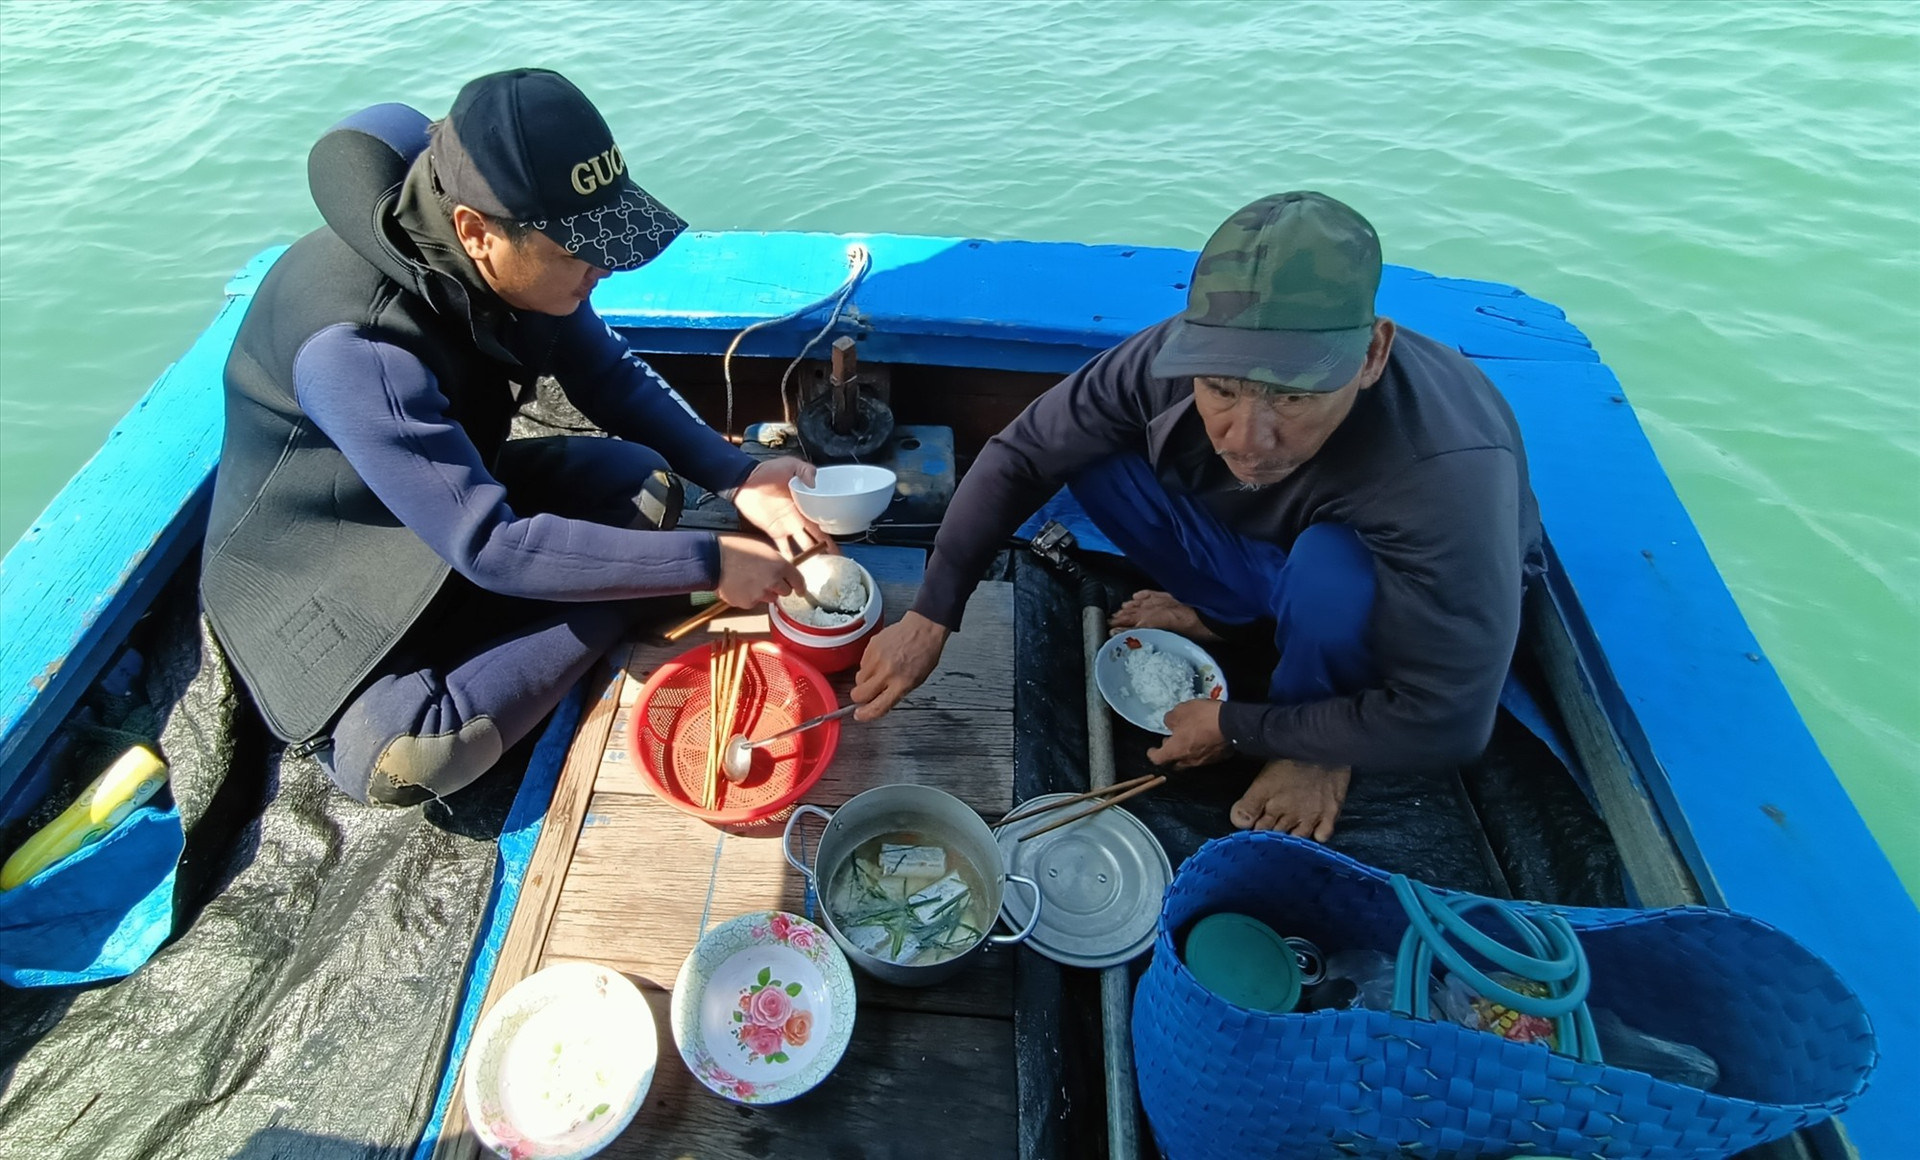 Ngư dân ăn cơm trên thuyền và lấy lại sức để săn tôm hùm nhí. Ảnh: N.Q